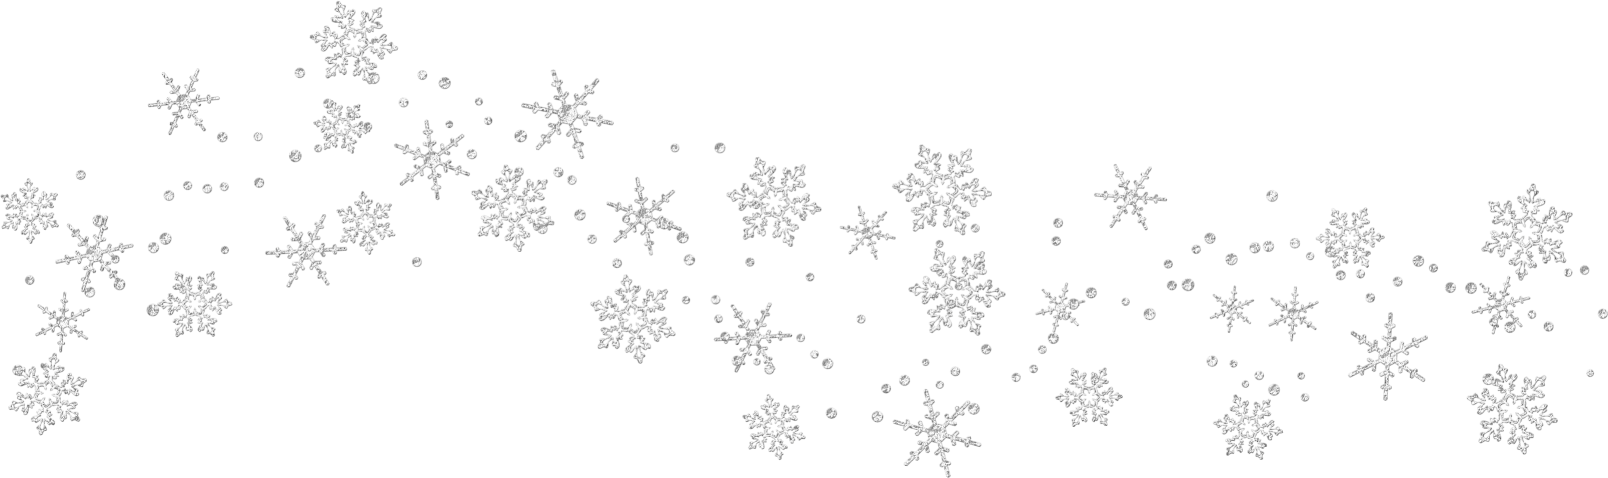 Transparent Snowflakes Clipart?m=1381788000